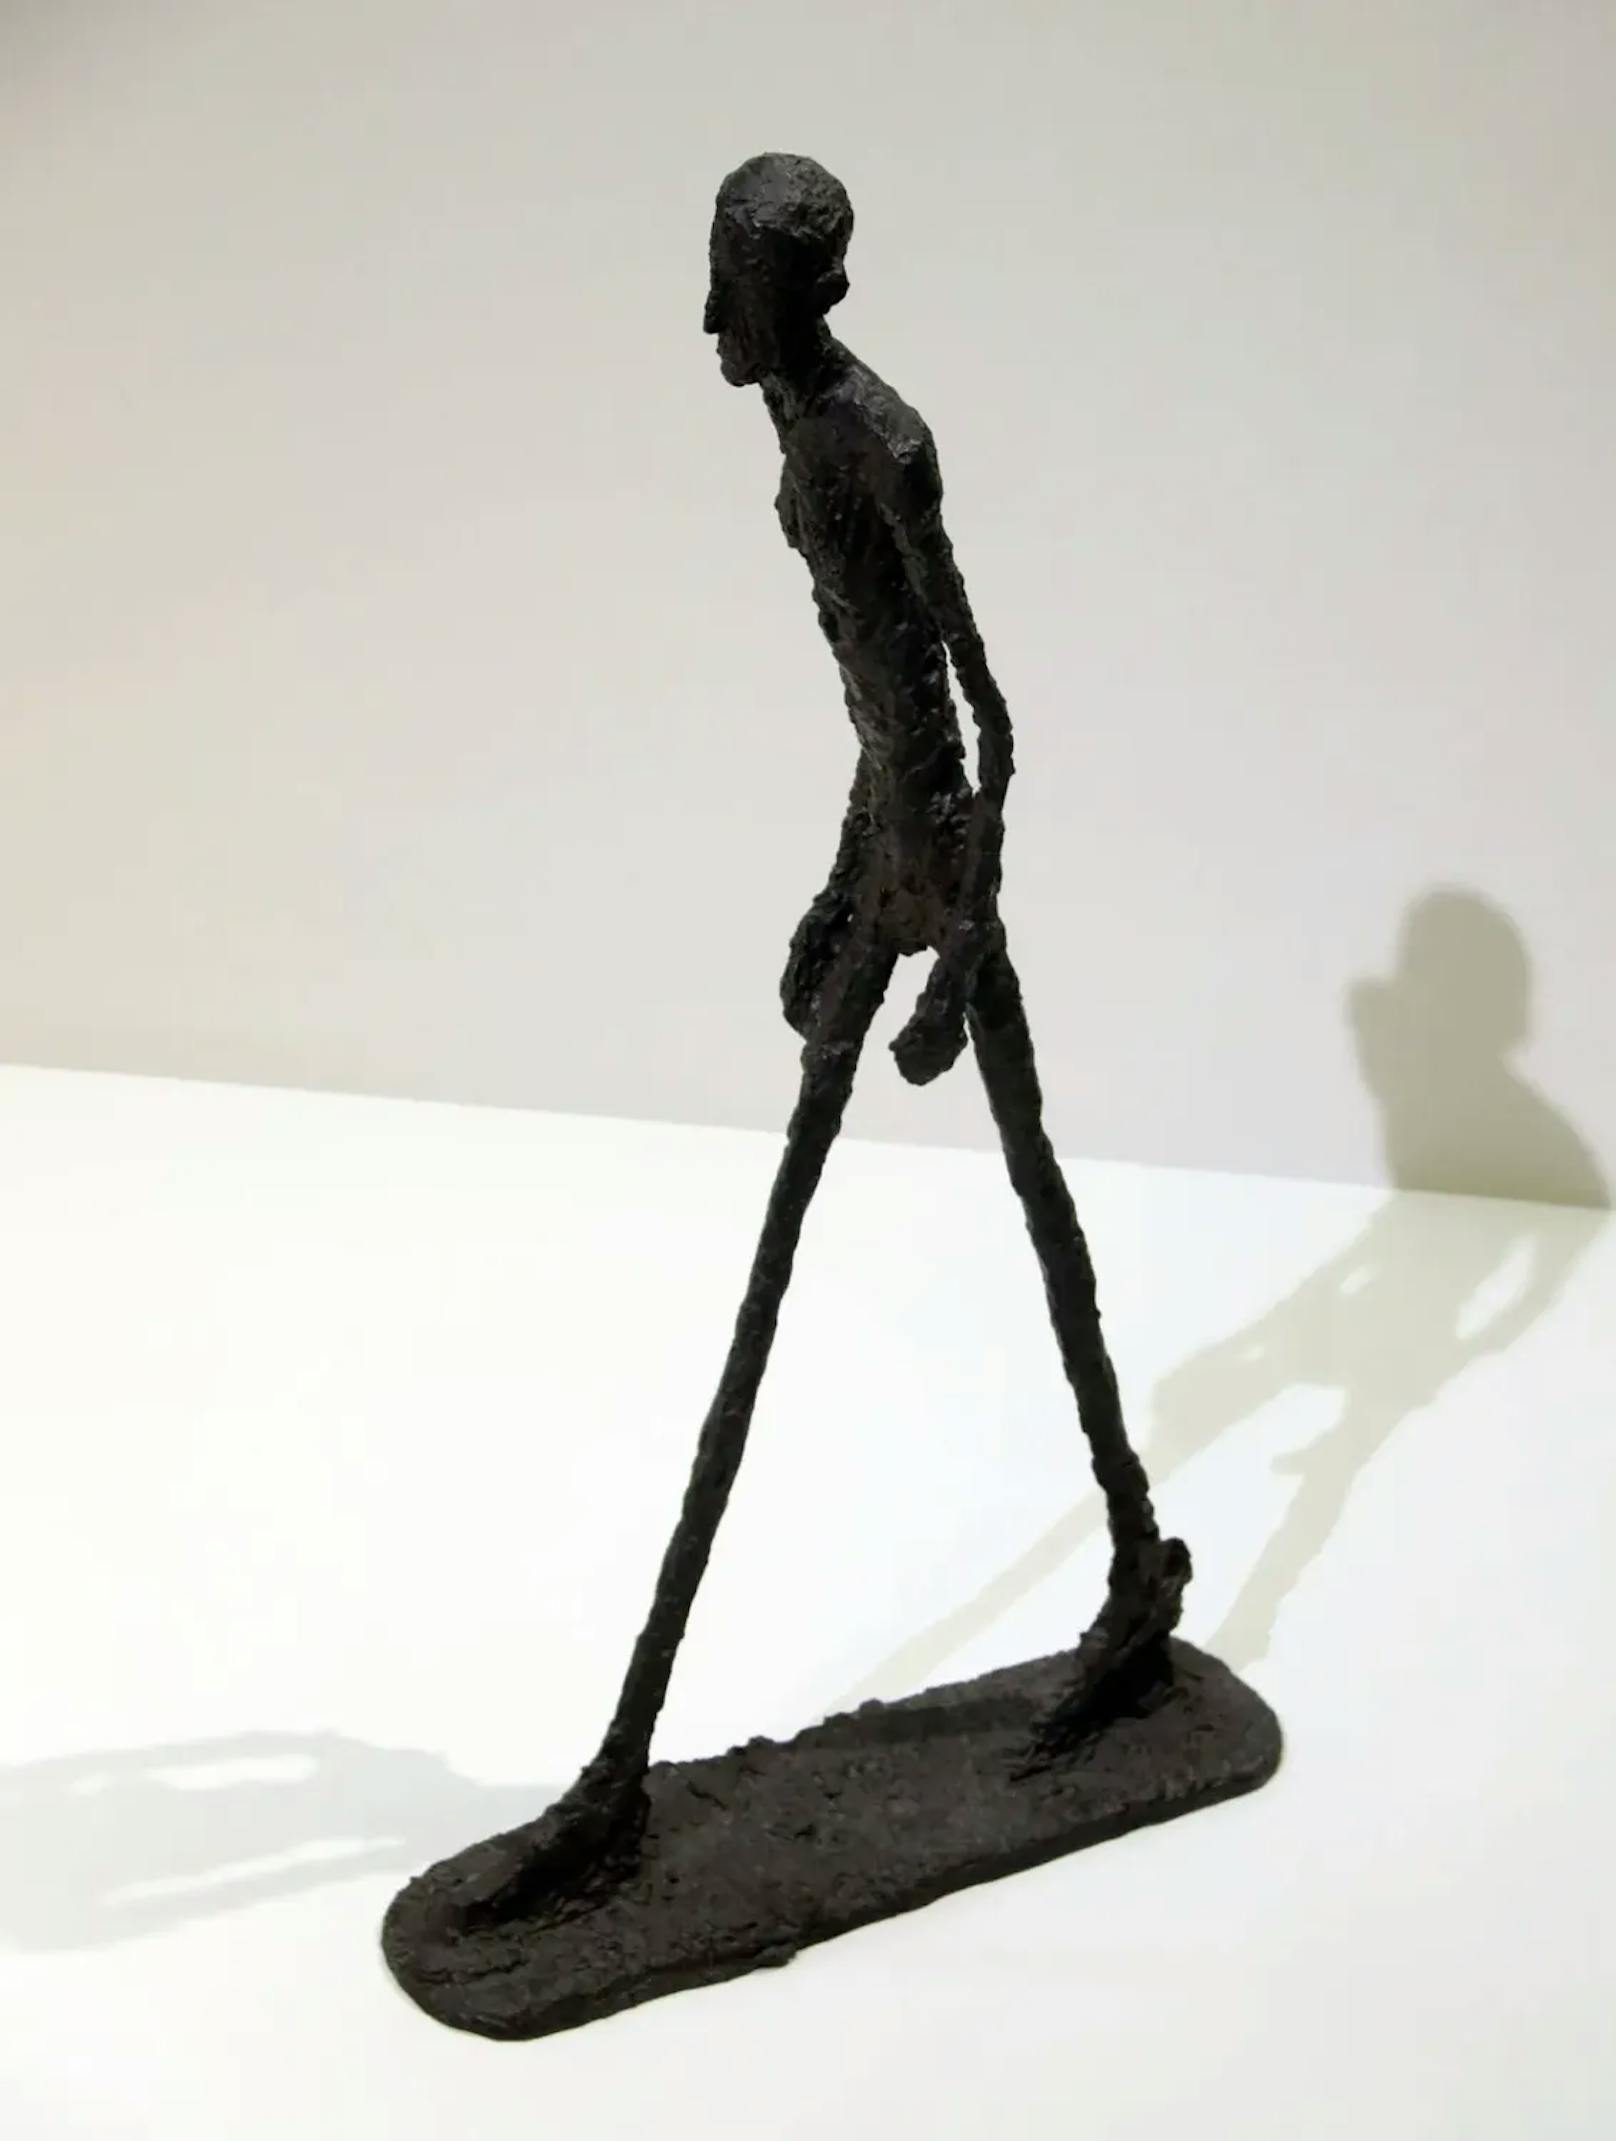 Den Rekord für den höchsten Preis bei einer Kunstauktion in Europa hielt bislang die Skulptur "Walking Man I" des Schweizer Künstlers Alberto Giacometti, die Sotheby’s im Jahr 2010 für 65 Millionen Pfund versteigerte.